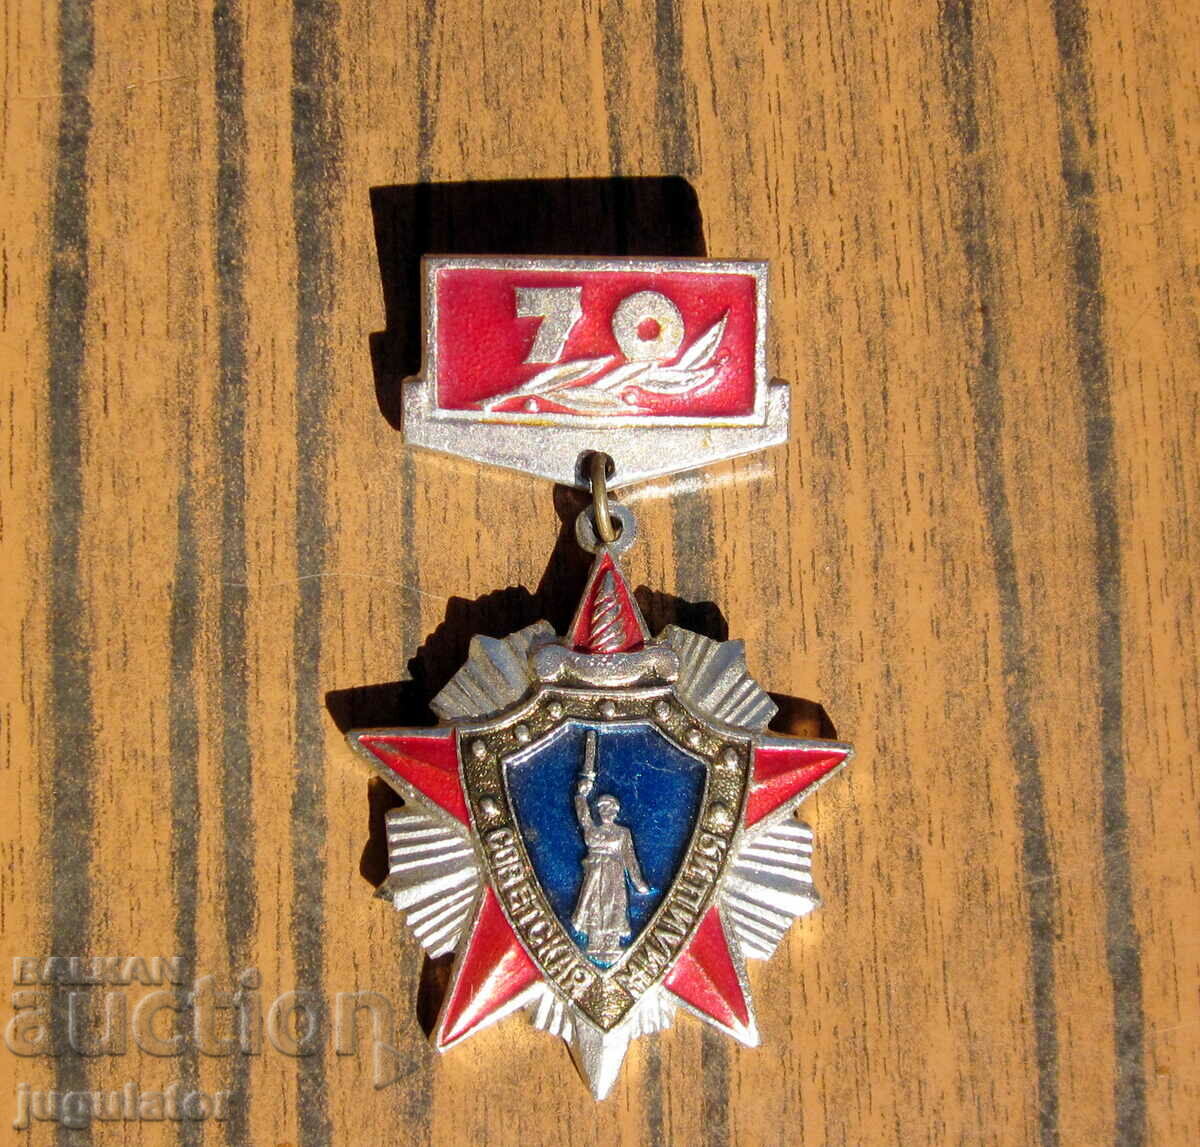 παλιό ρωσικό σοβιετικό σήμα μετάλλιο πολιτοφυλακή της Μόσχας